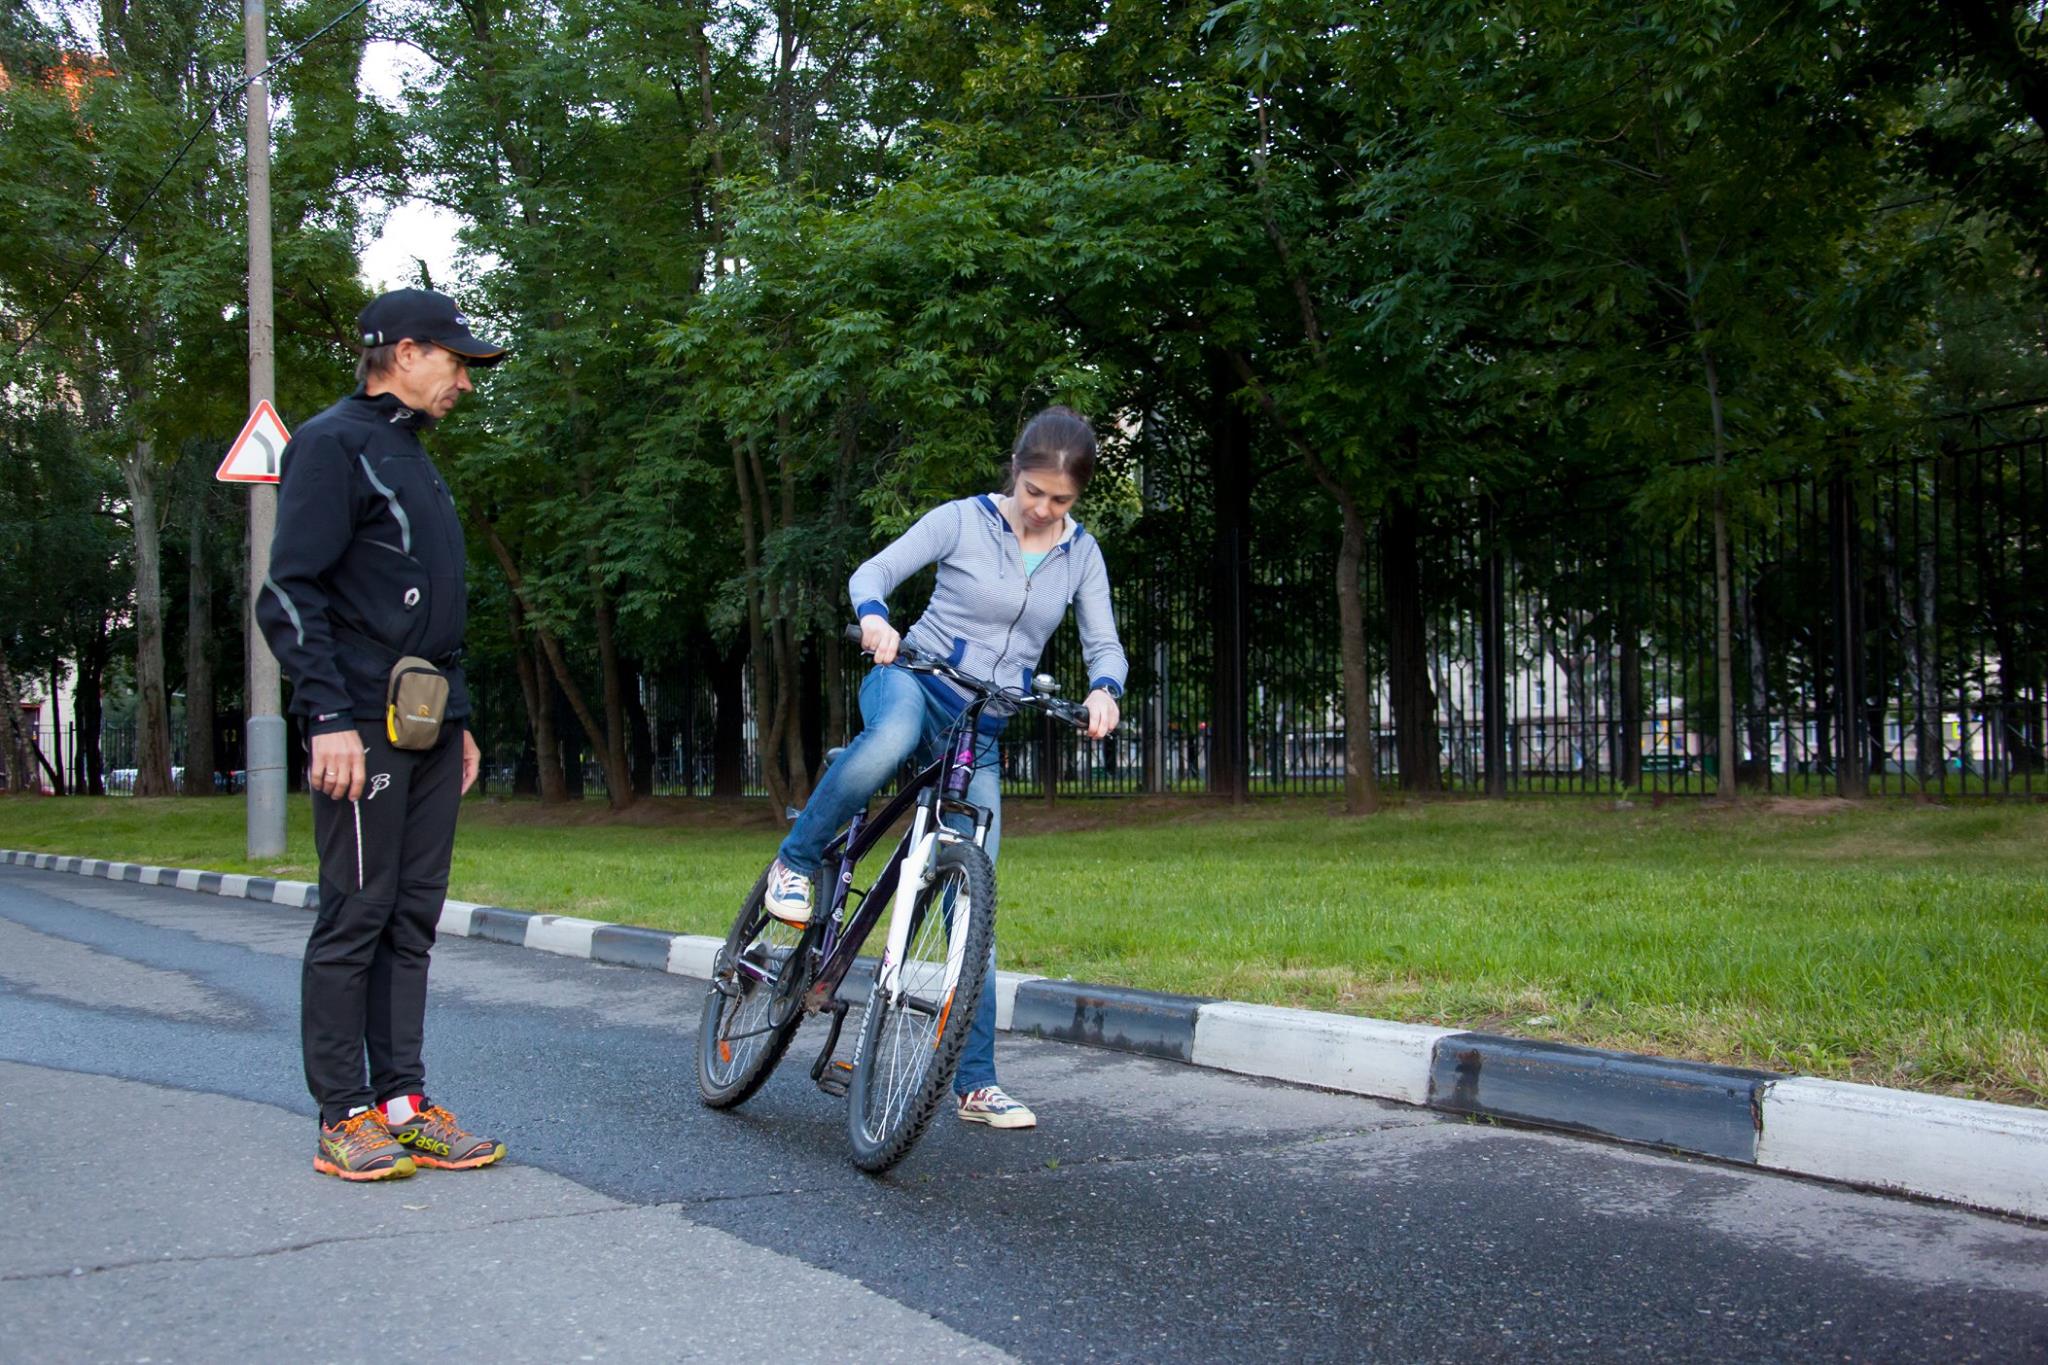 STRELA: обучение взрослых езде на велосипеде. Место занятий - парк Дворца пионеров на Воробьевых горах